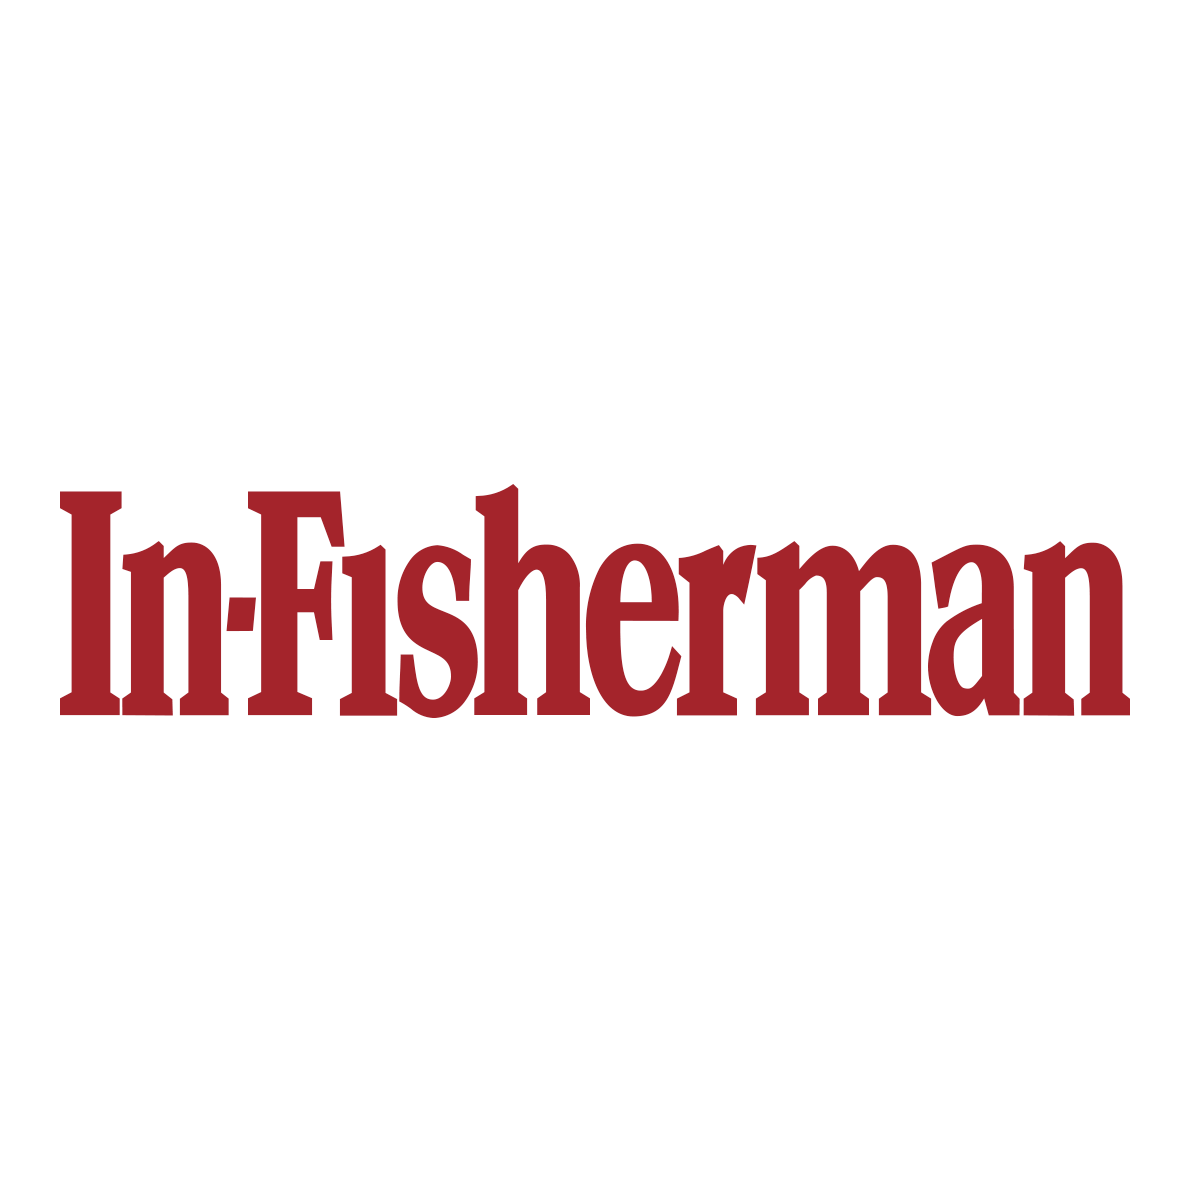 www.in-fisherman.com